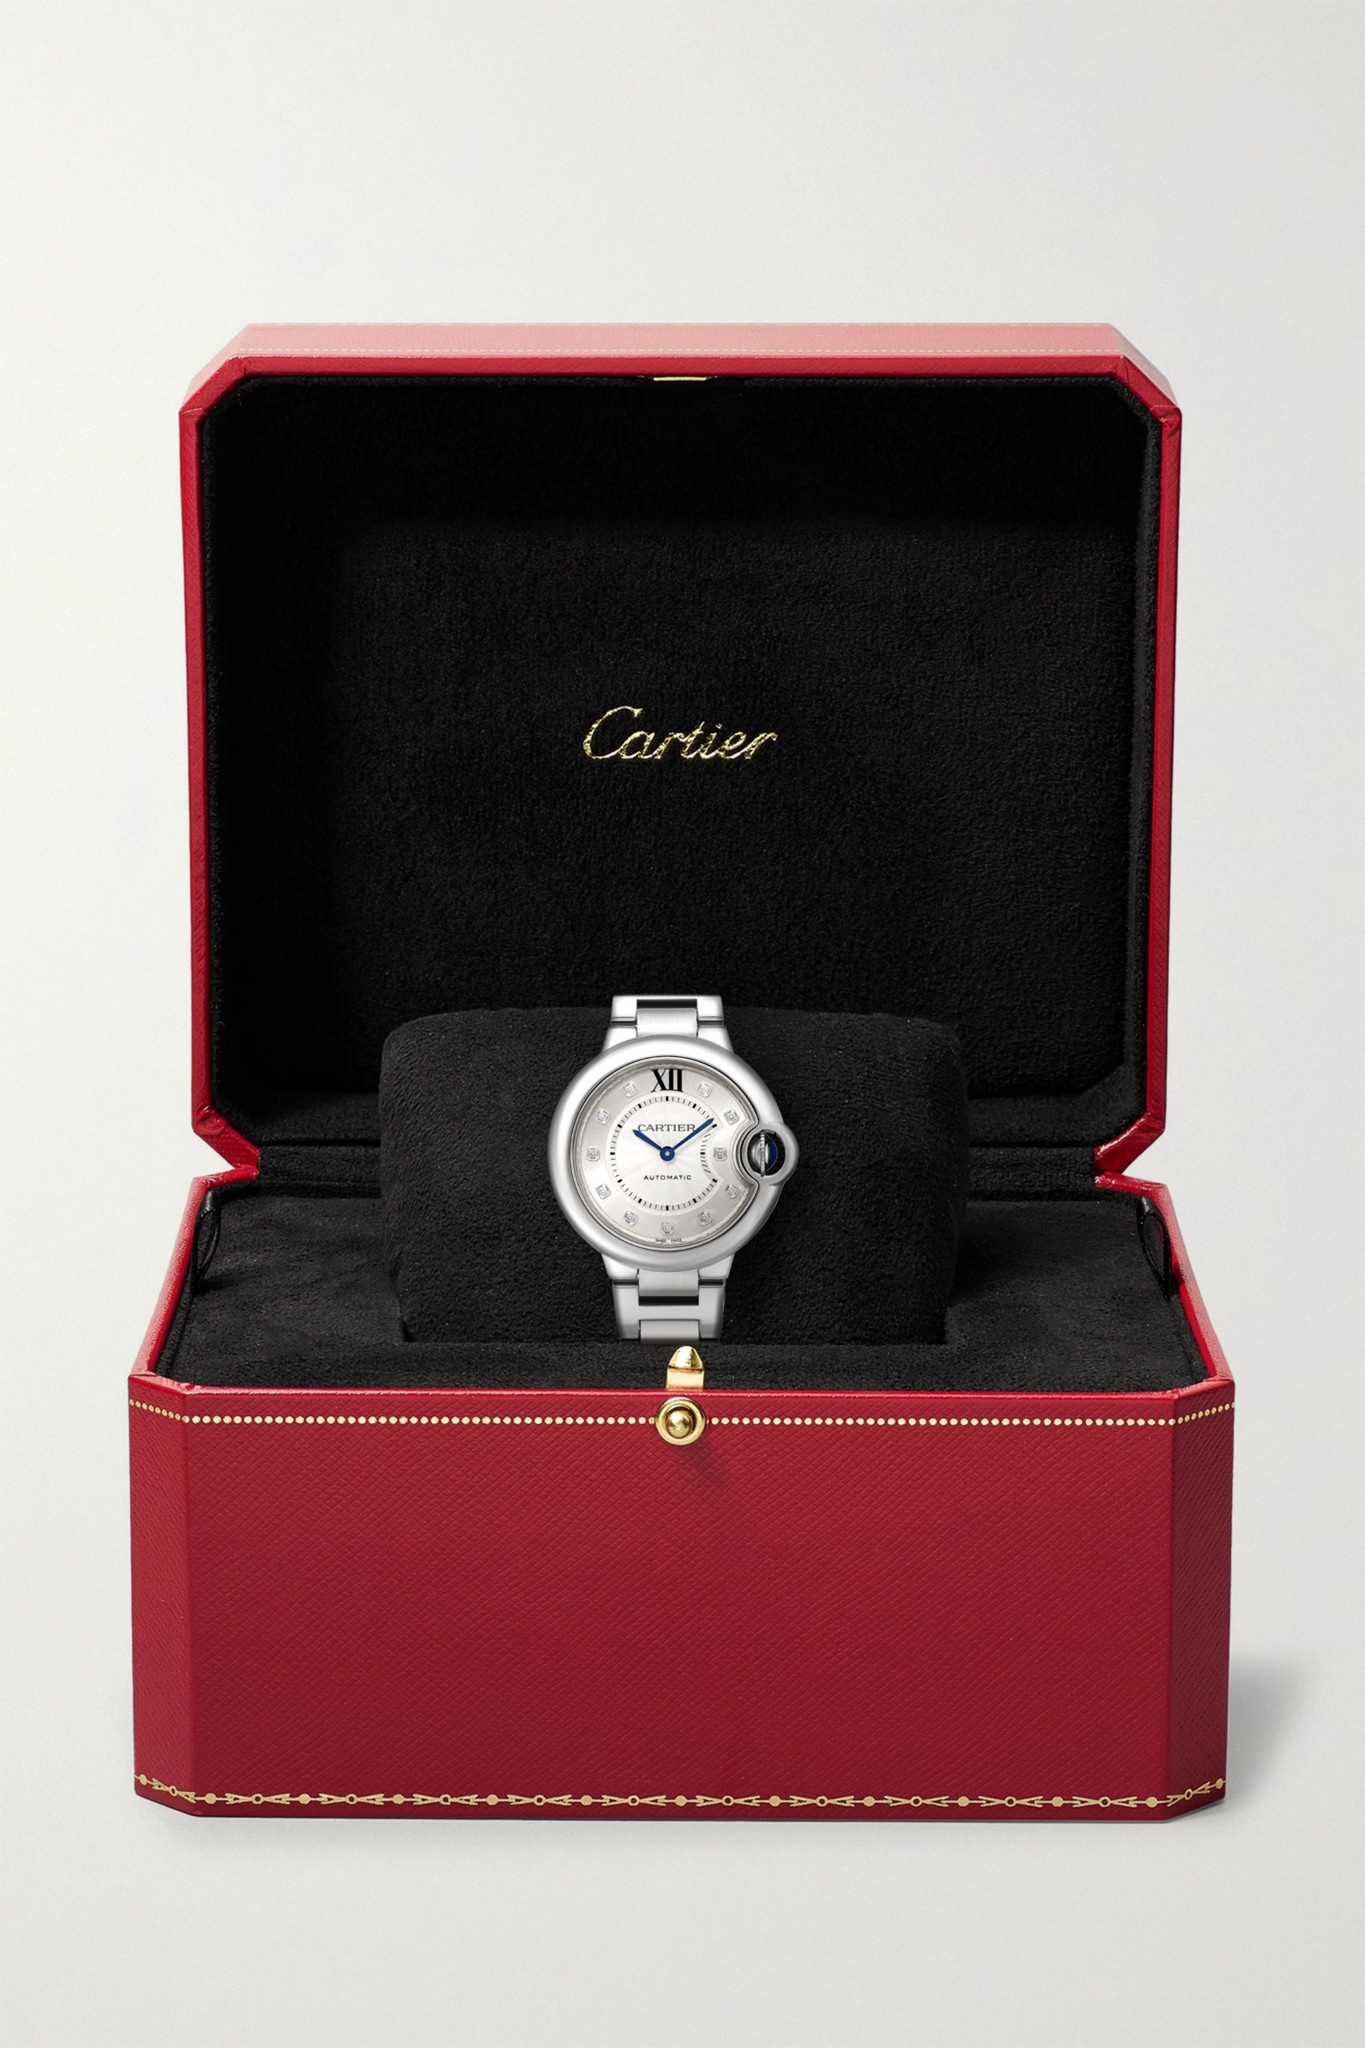 Ballon Bleu de Cartier Automatic 33mm stainless steel and diamond watch - 7